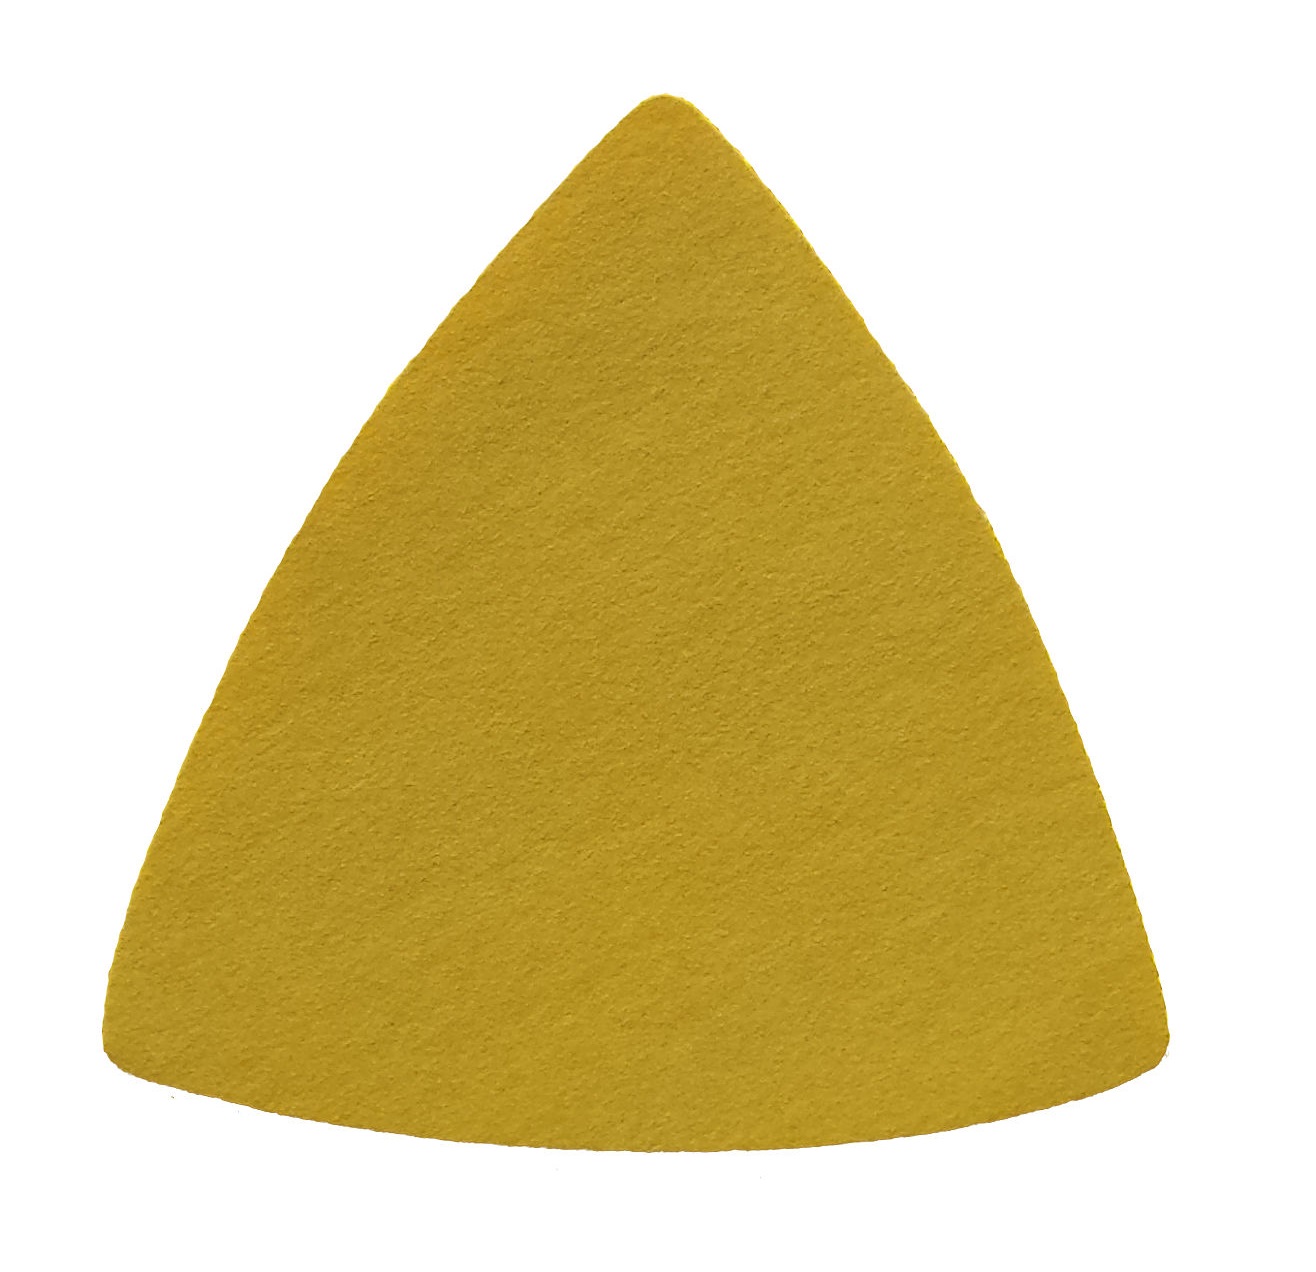 Triunghiuri abrazive - Triunghi abraziv Velcro 255P 79 0G P400, oldindustry.ro